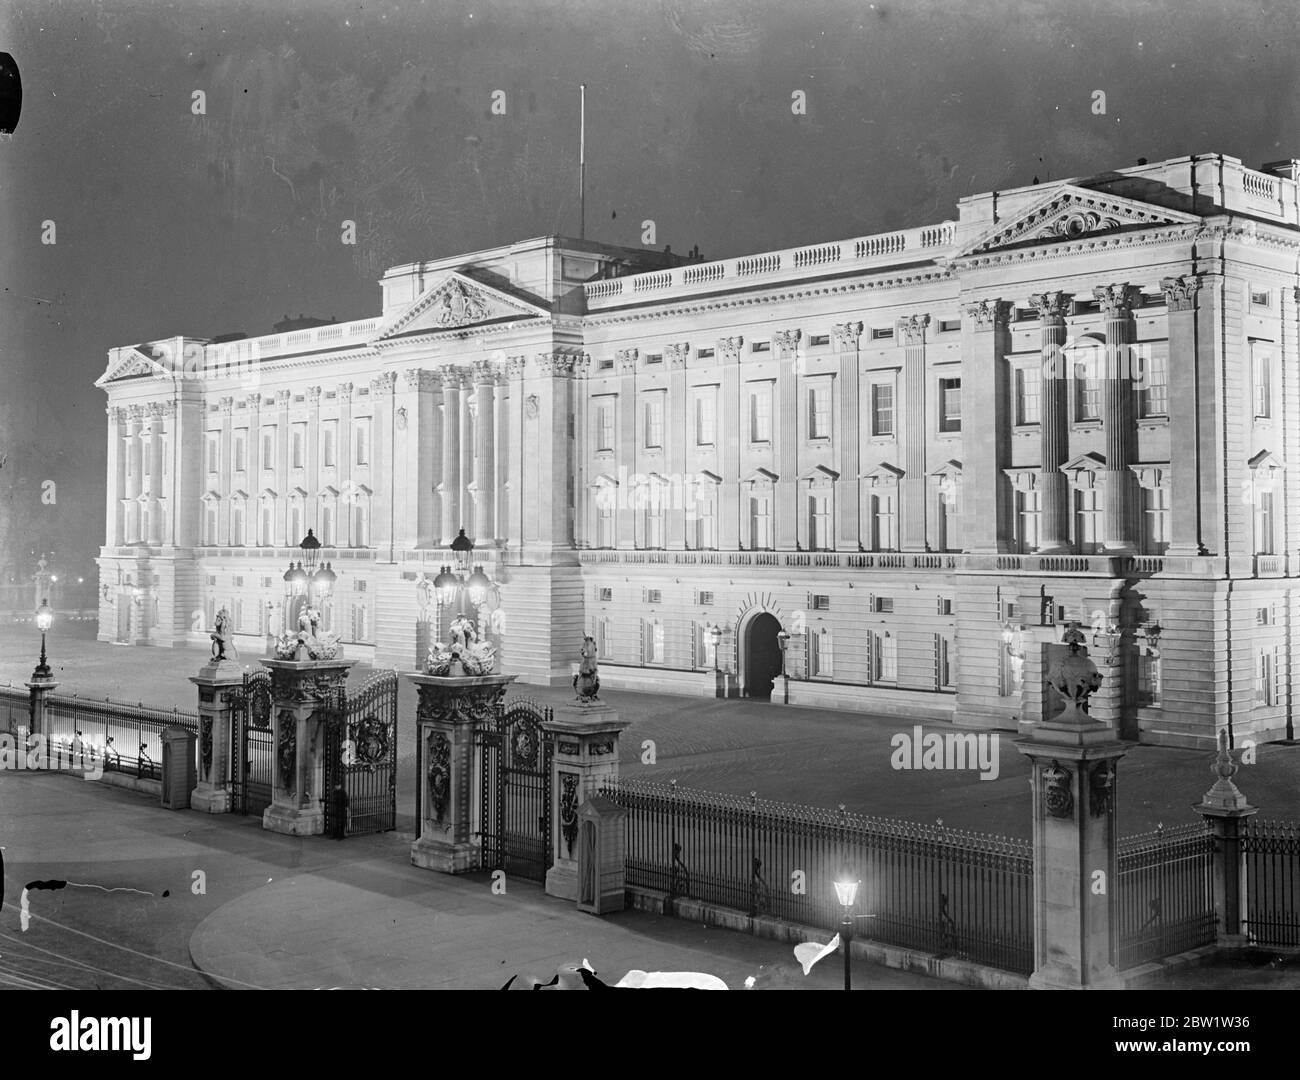 Le premier test de l'éclairage de Coronation a été effectué au Palais de Buckingham. Spectacles photo : le palais de Buckingham illuminé pendant le test. 19 avril 1937 Banque D'Images